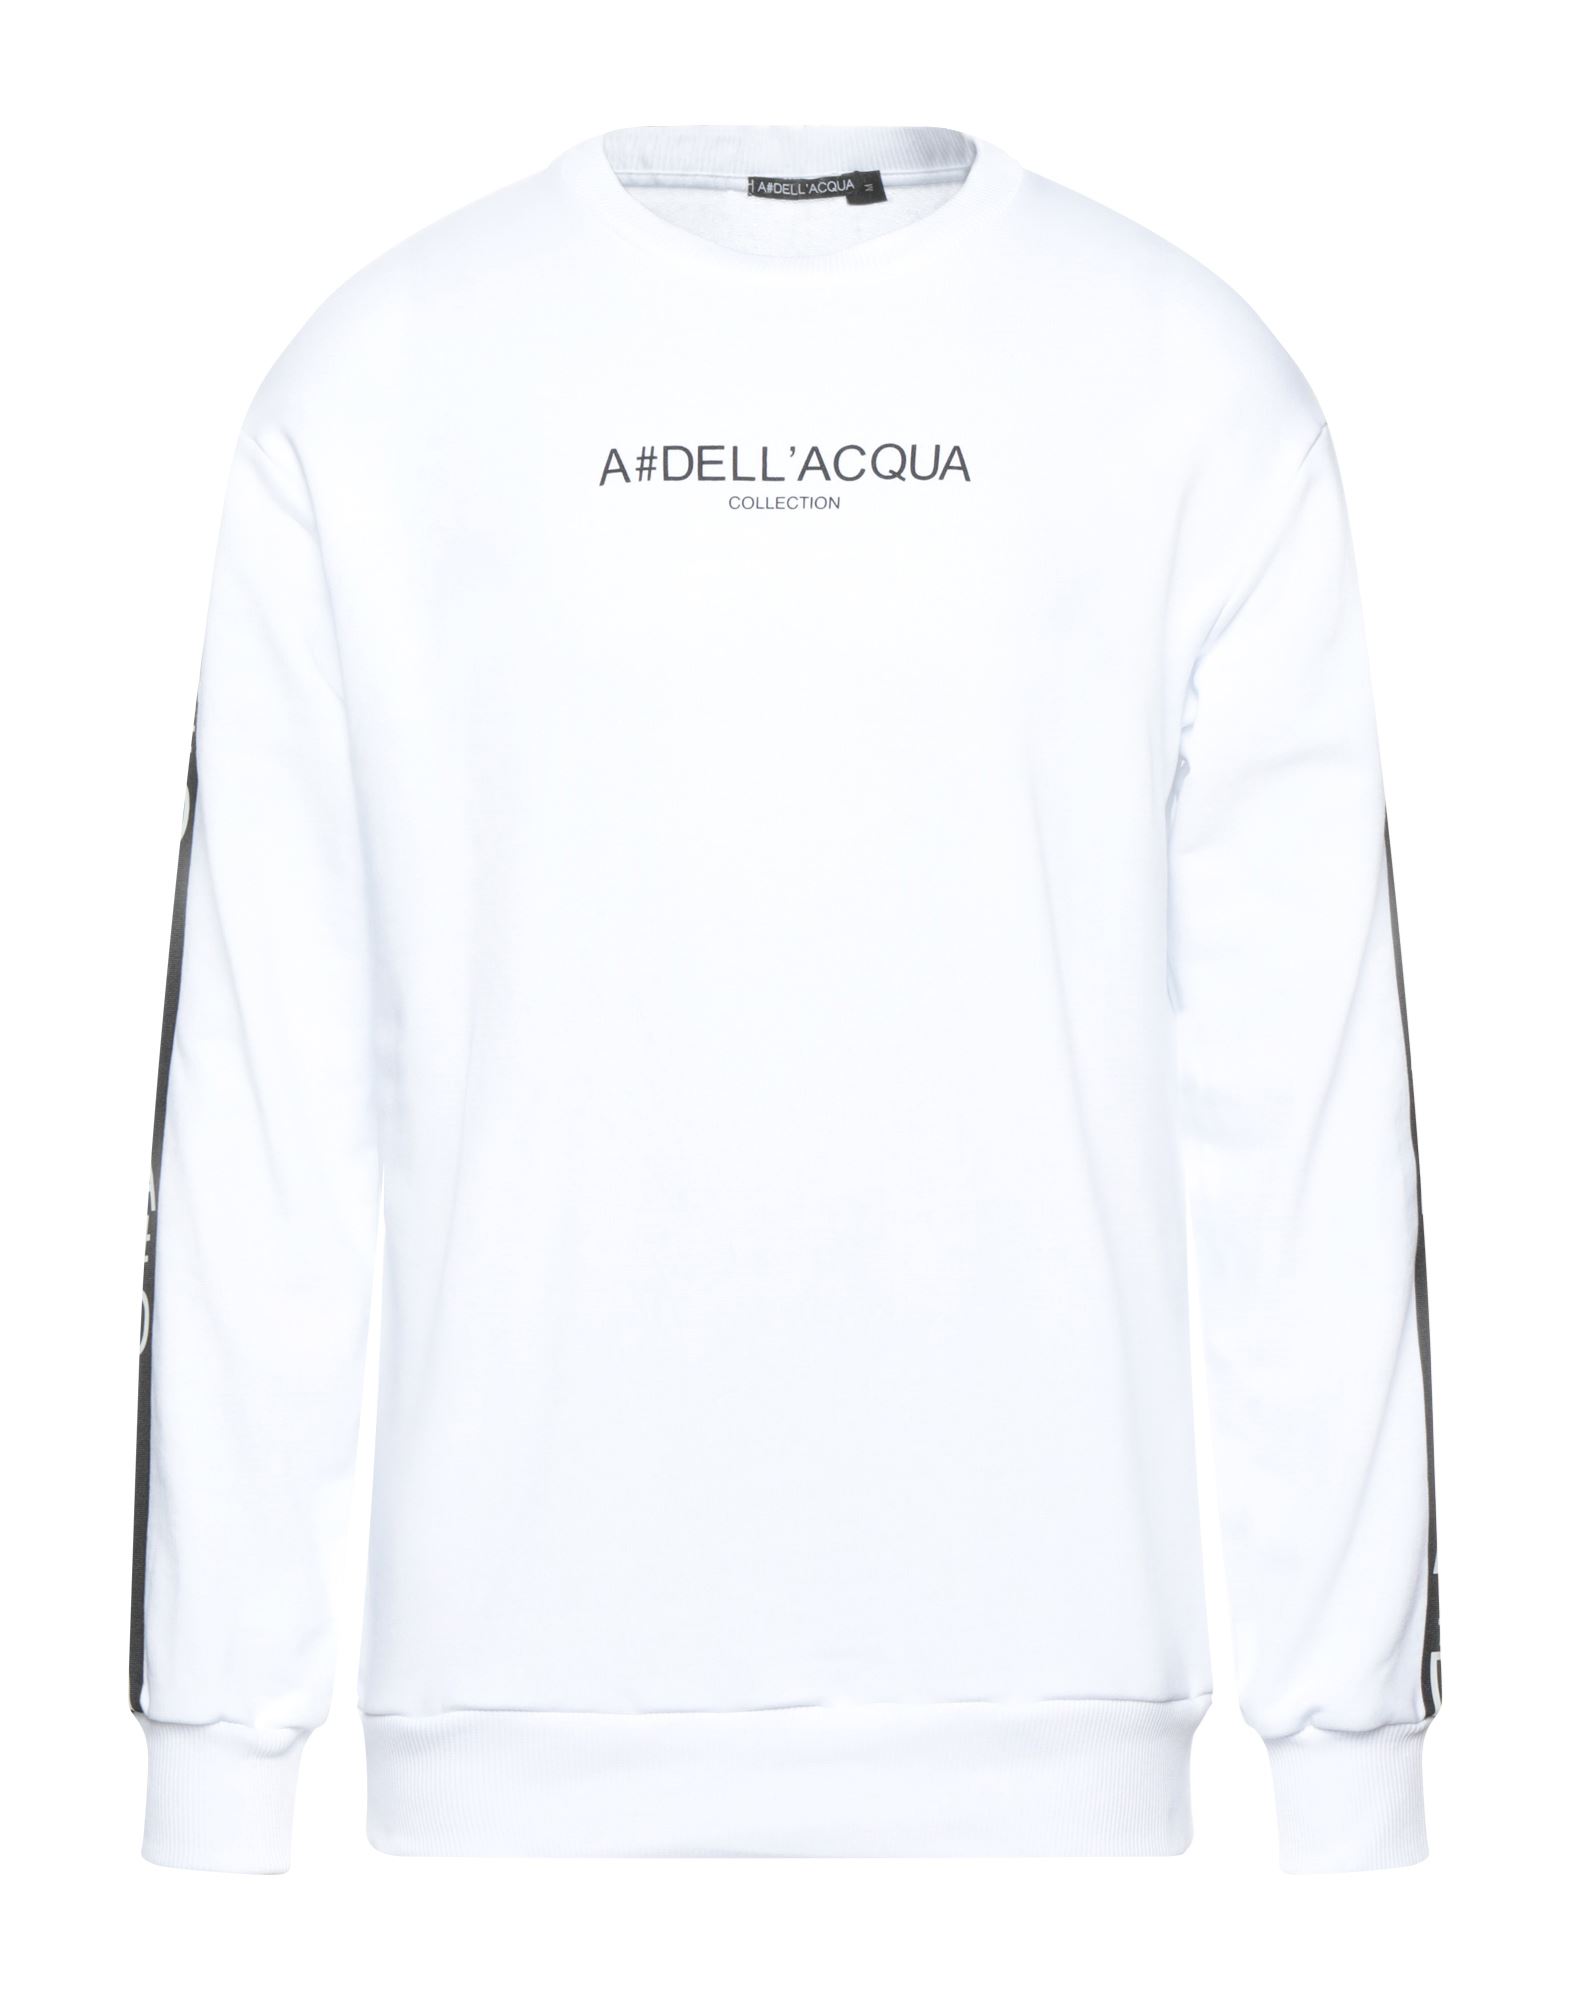 Alessandro Dell'acqua Sweatshirts In White